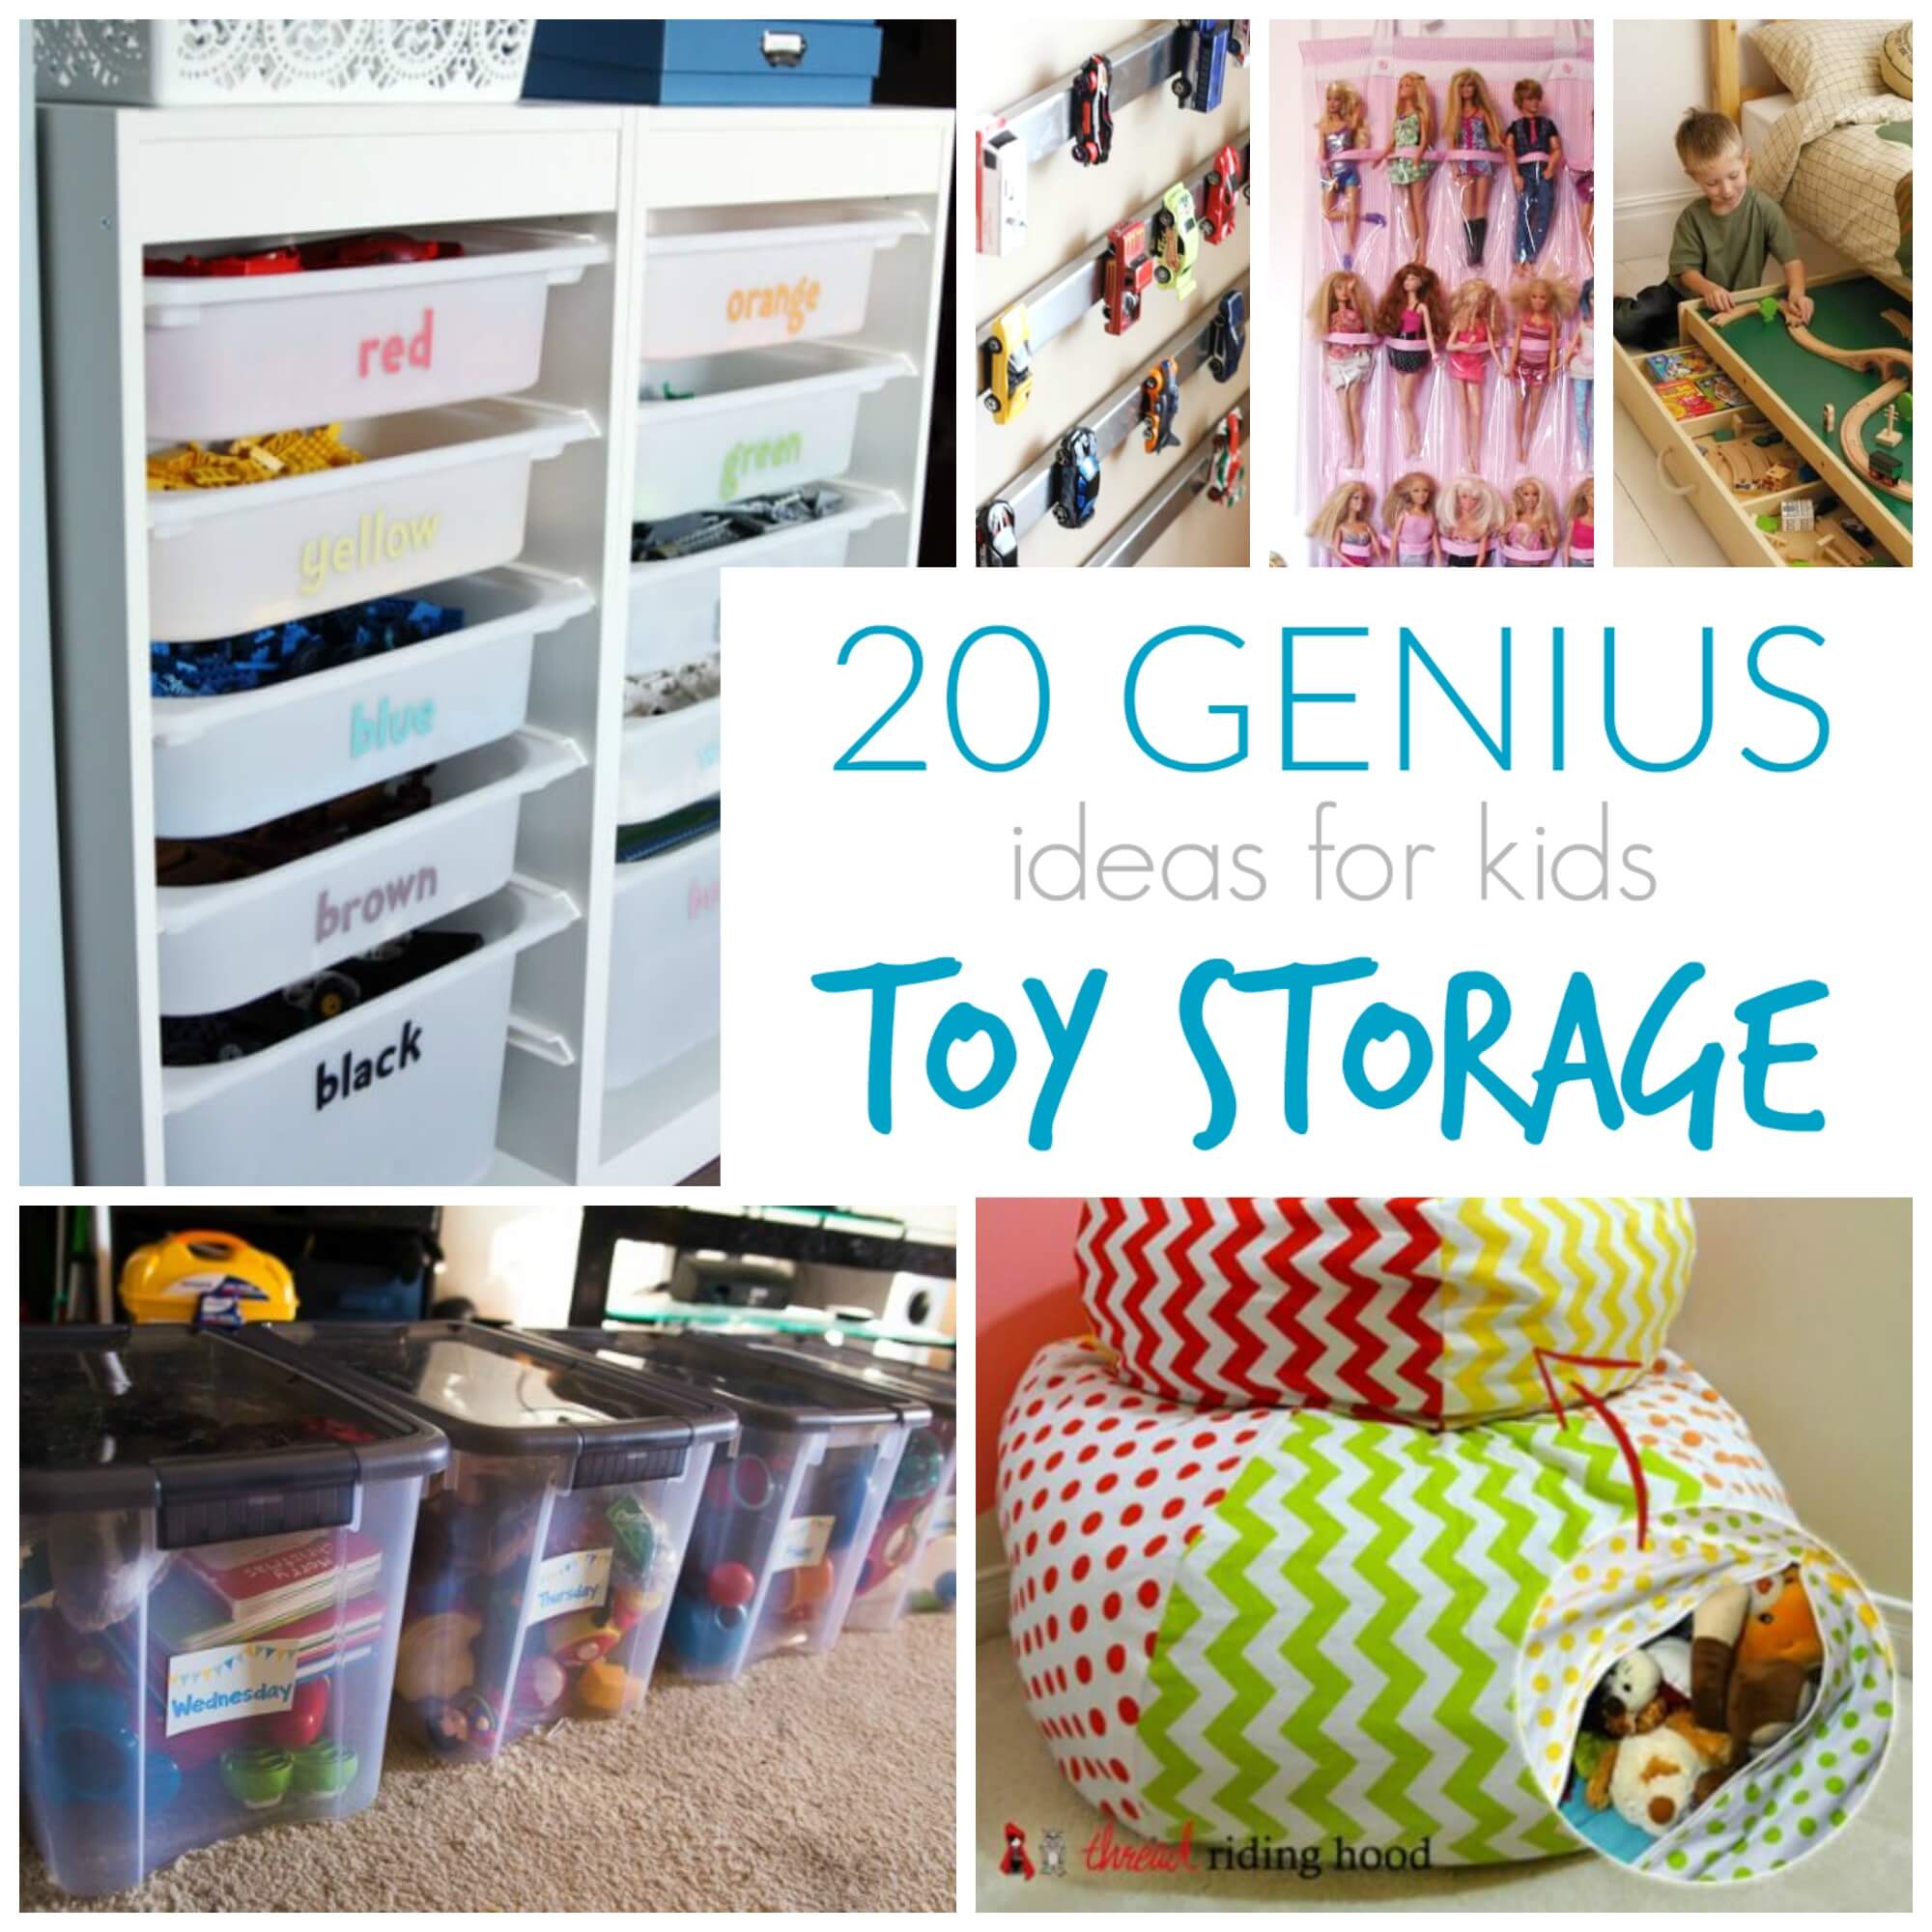 children's room toy storage ideas